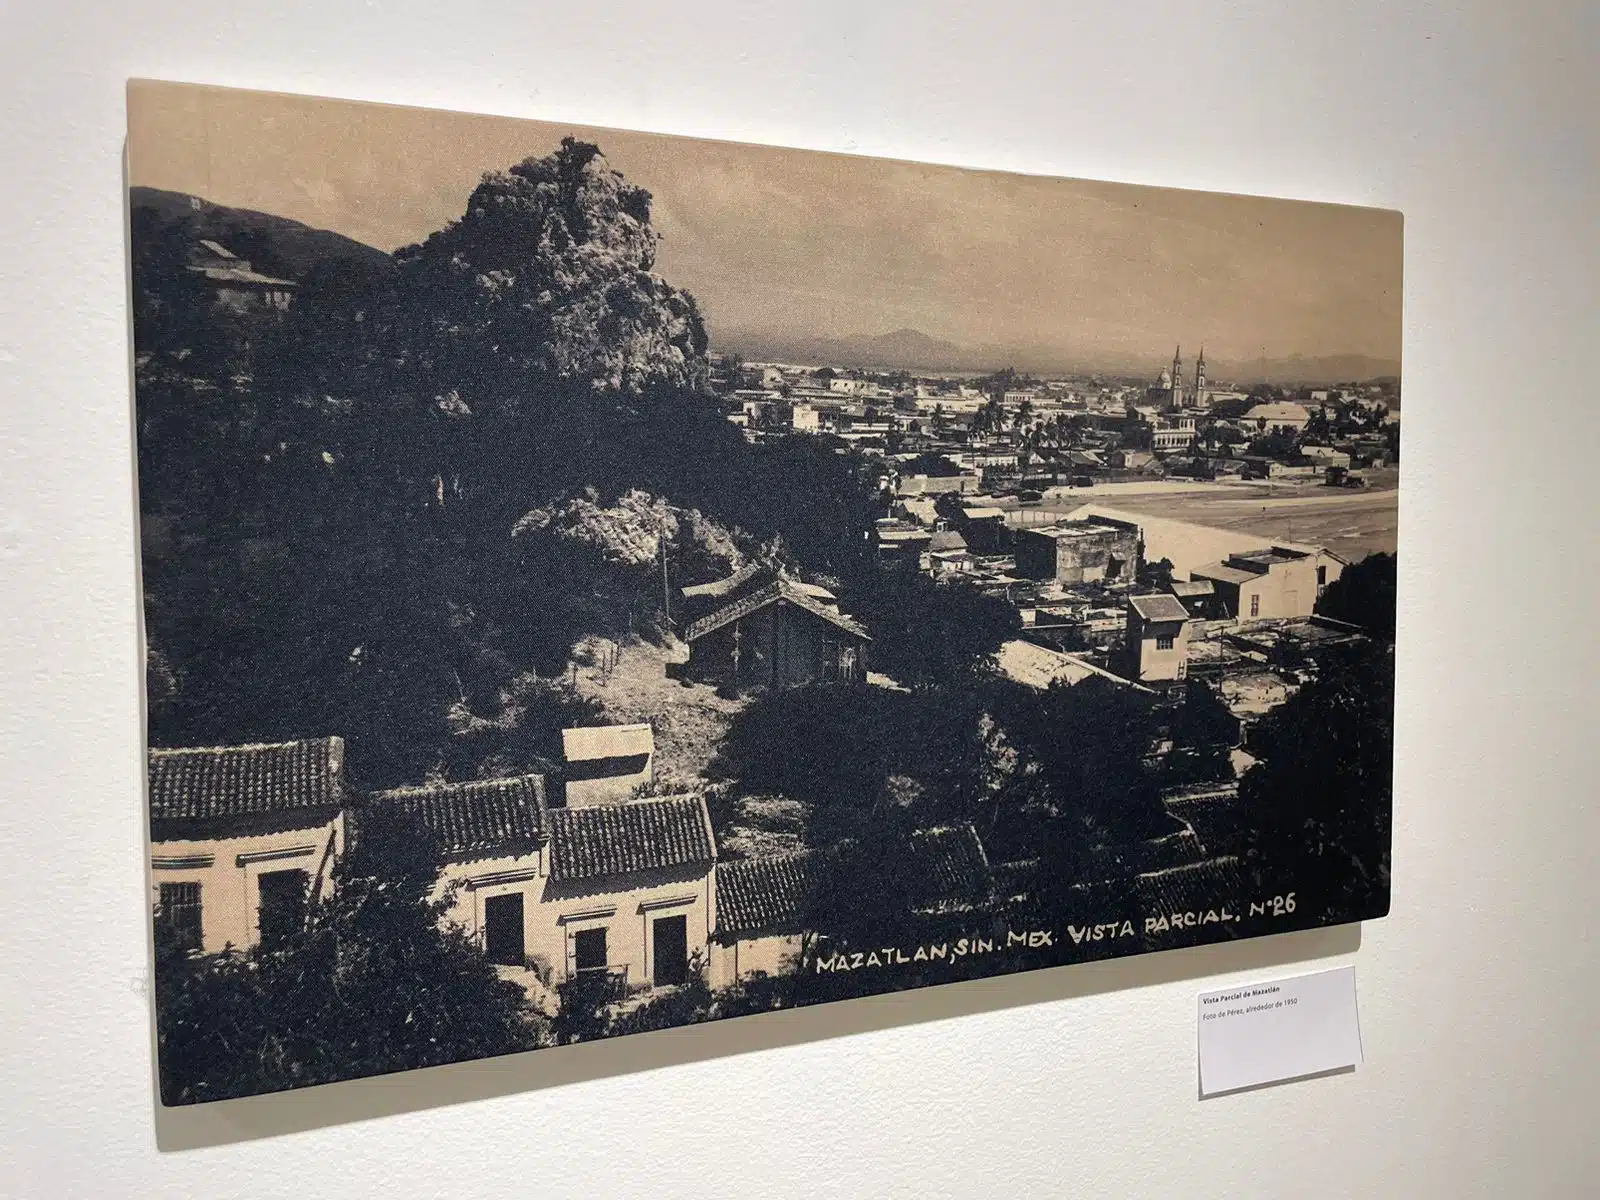 Exposición fotográfica “Imagen y memoria en una postal” de José Luis Echeagaray en la Galería Rubio